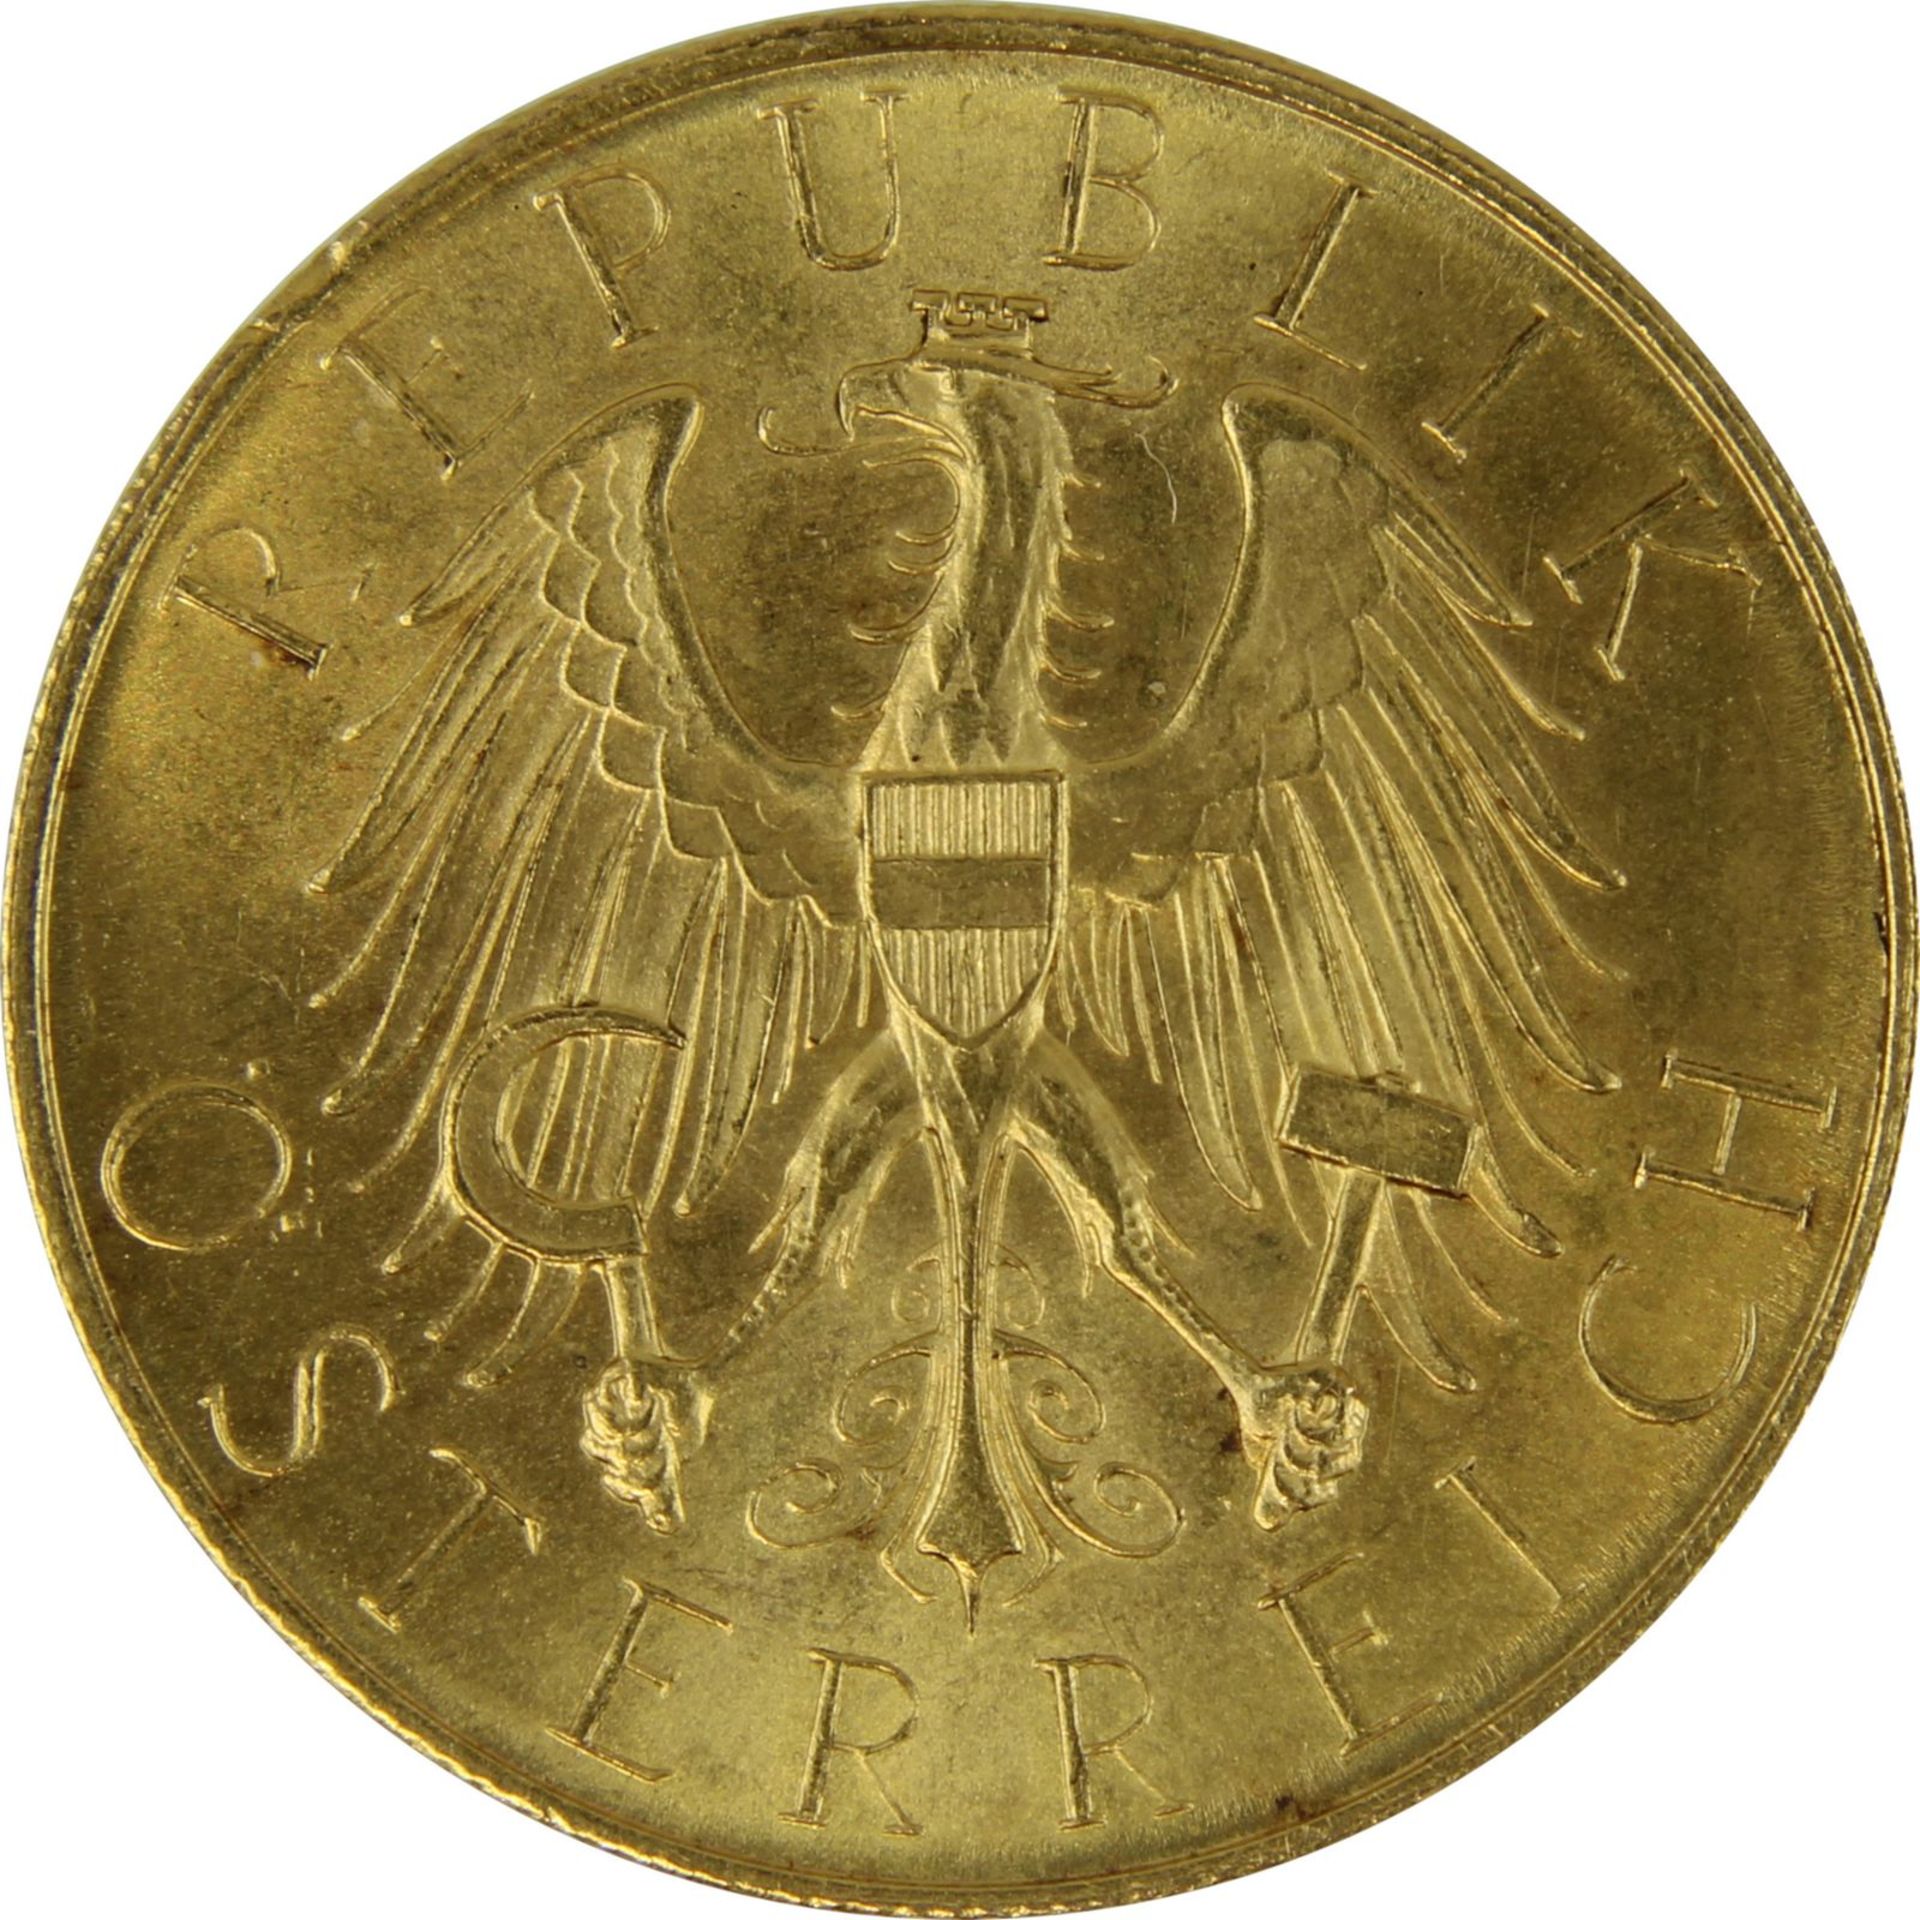 Goldmünze zu 25 Schilling, Republik Österreich 1926, Avers: Nominalwert, Jahreszahl 1926. Lorbeer u. - Bild 3 aus 3